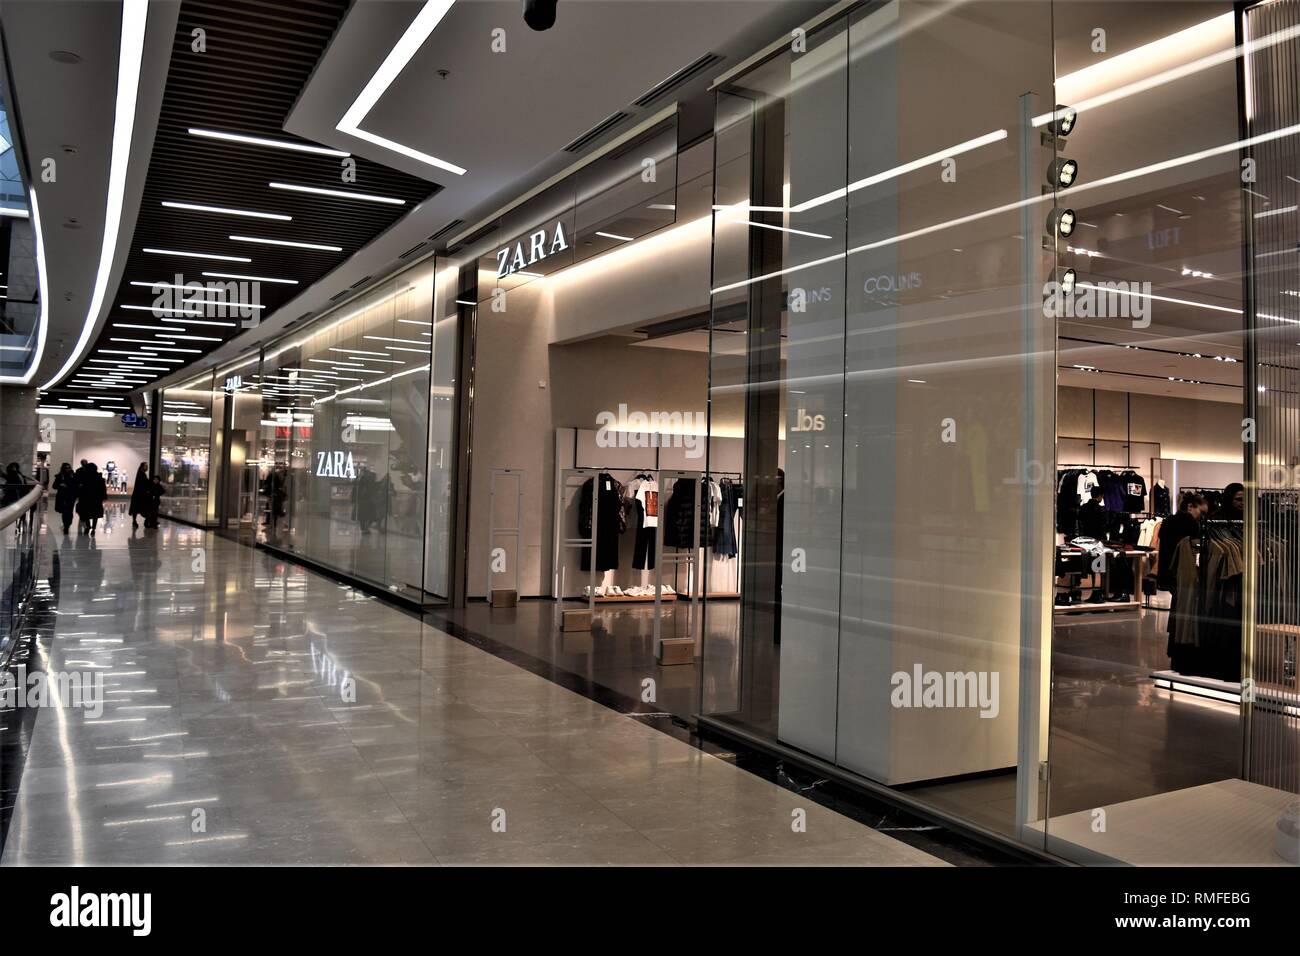 Ankara, Turquie. Feb 14, 2019. Une vue extérieure d'un magasin de vêtements  Zara dans un centre commercial. Zara est la marque principale du groupe  Inditex, l'un des plus grands détaillants de vêtements.